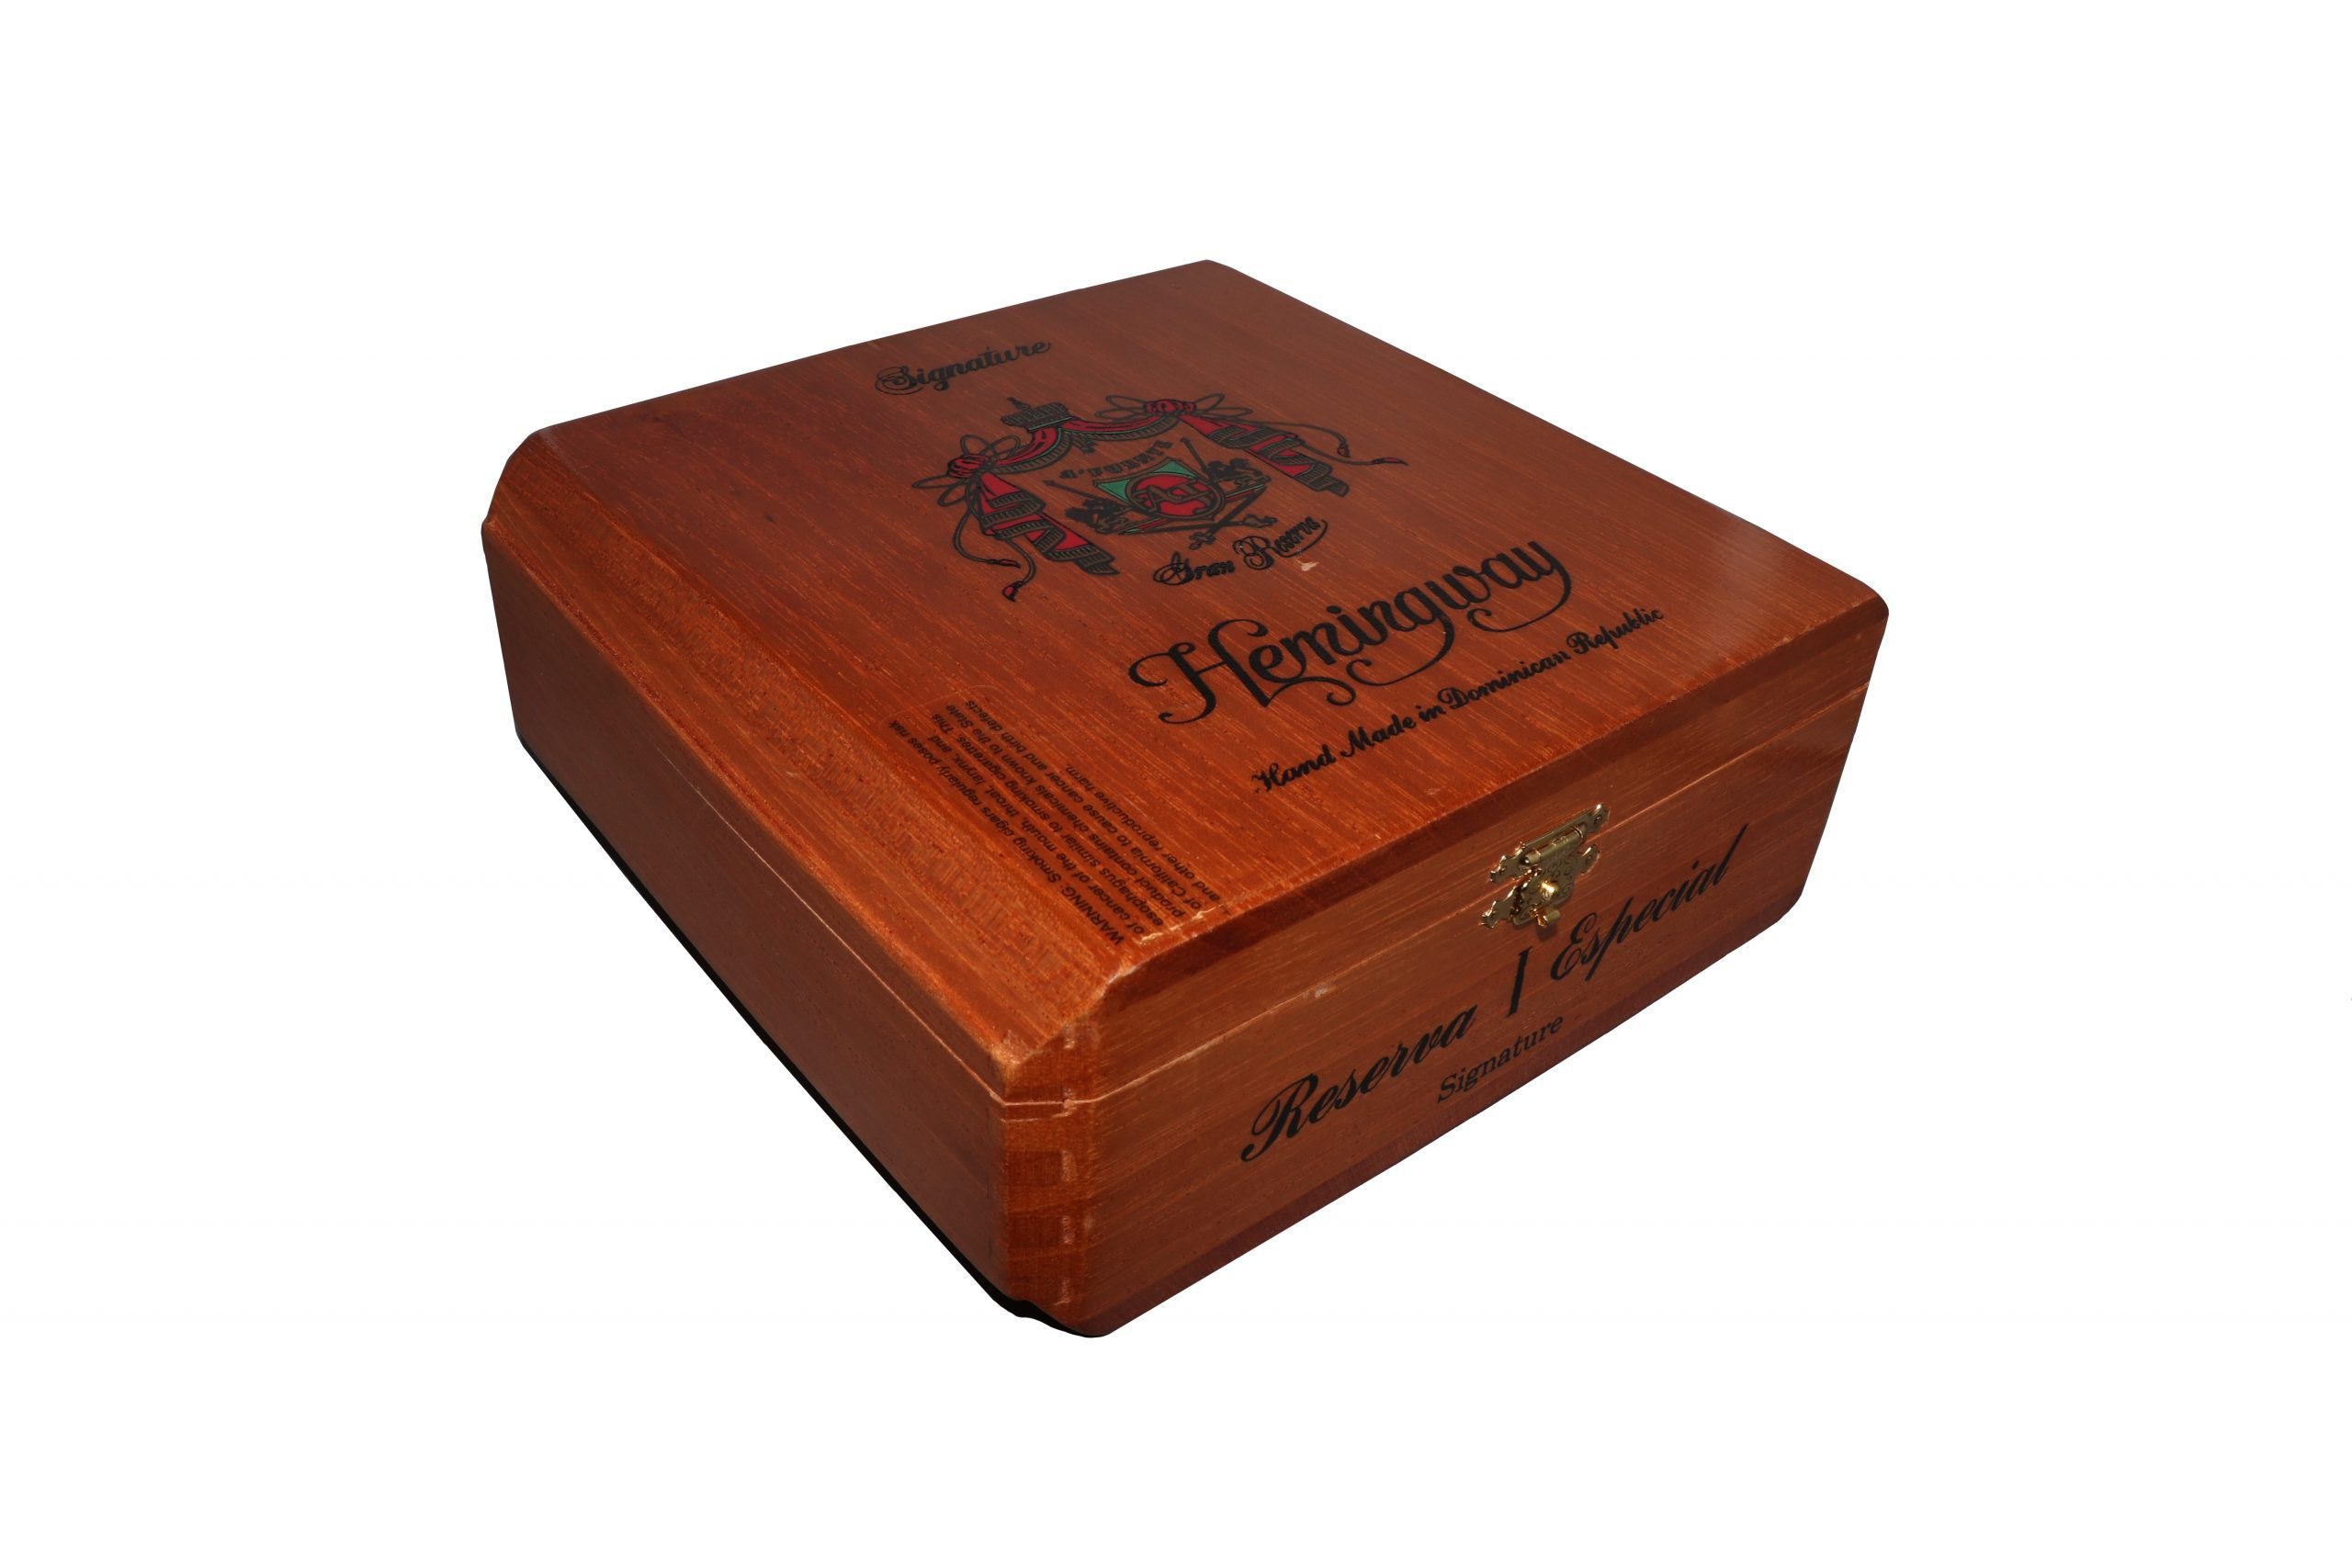 Closed box of 25 count Arturo Fuente Hemingway Signature cigars